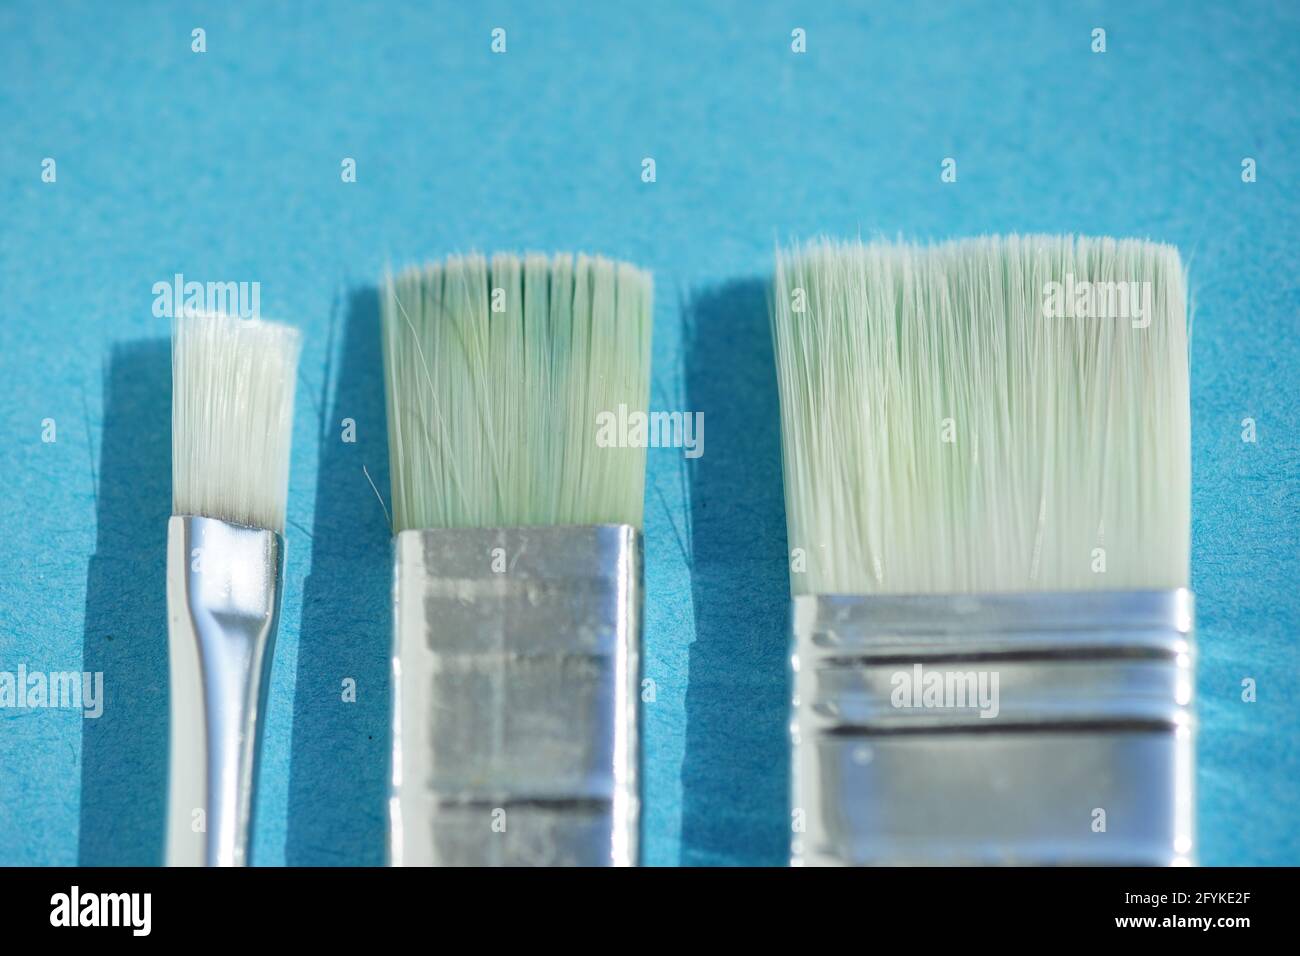 Synthetic Flat Paintbrush –